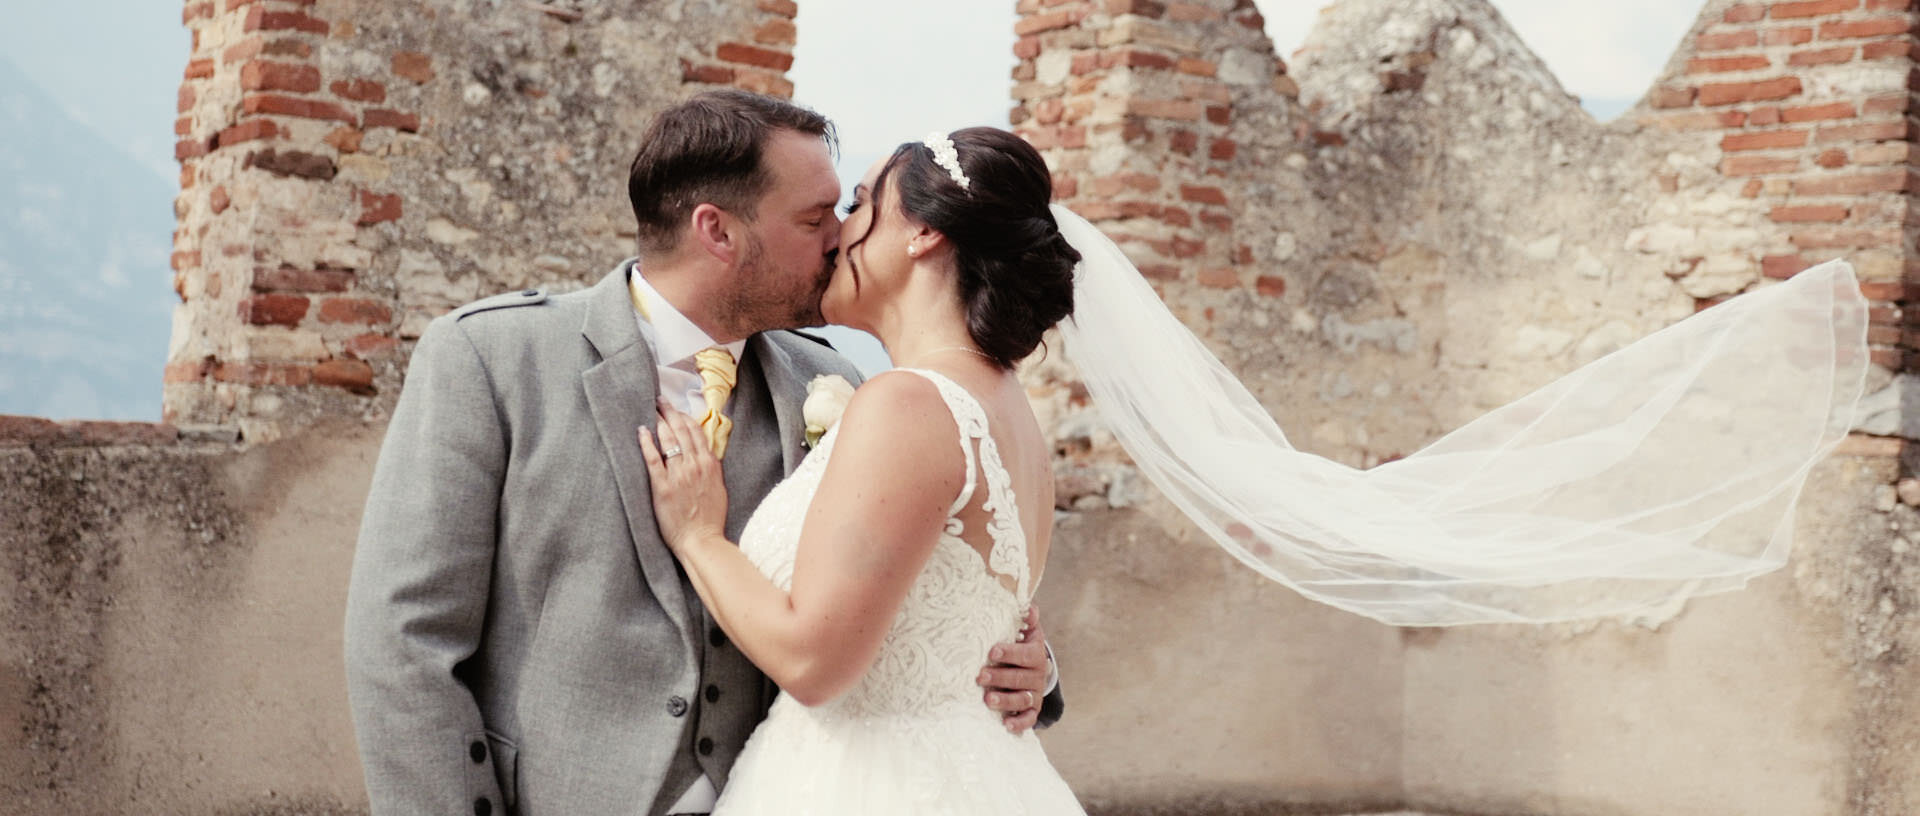 Elisa & Gavin Destination Wedding Film Lake Garda Malcesine 18.jpg